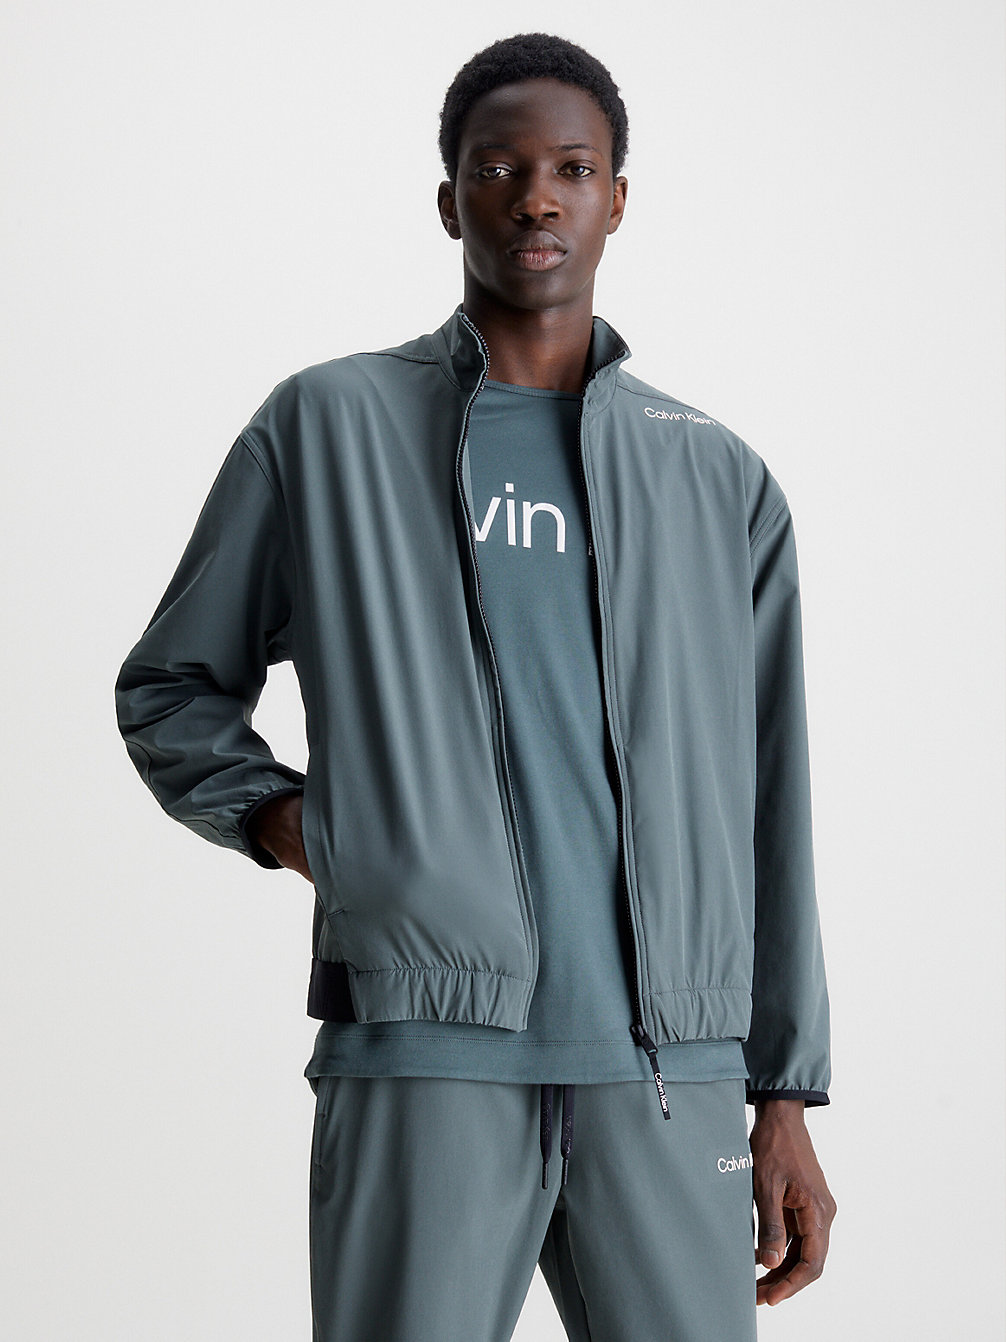 URBAN CHIC > Windjack > undefined heren - Calvin Klein